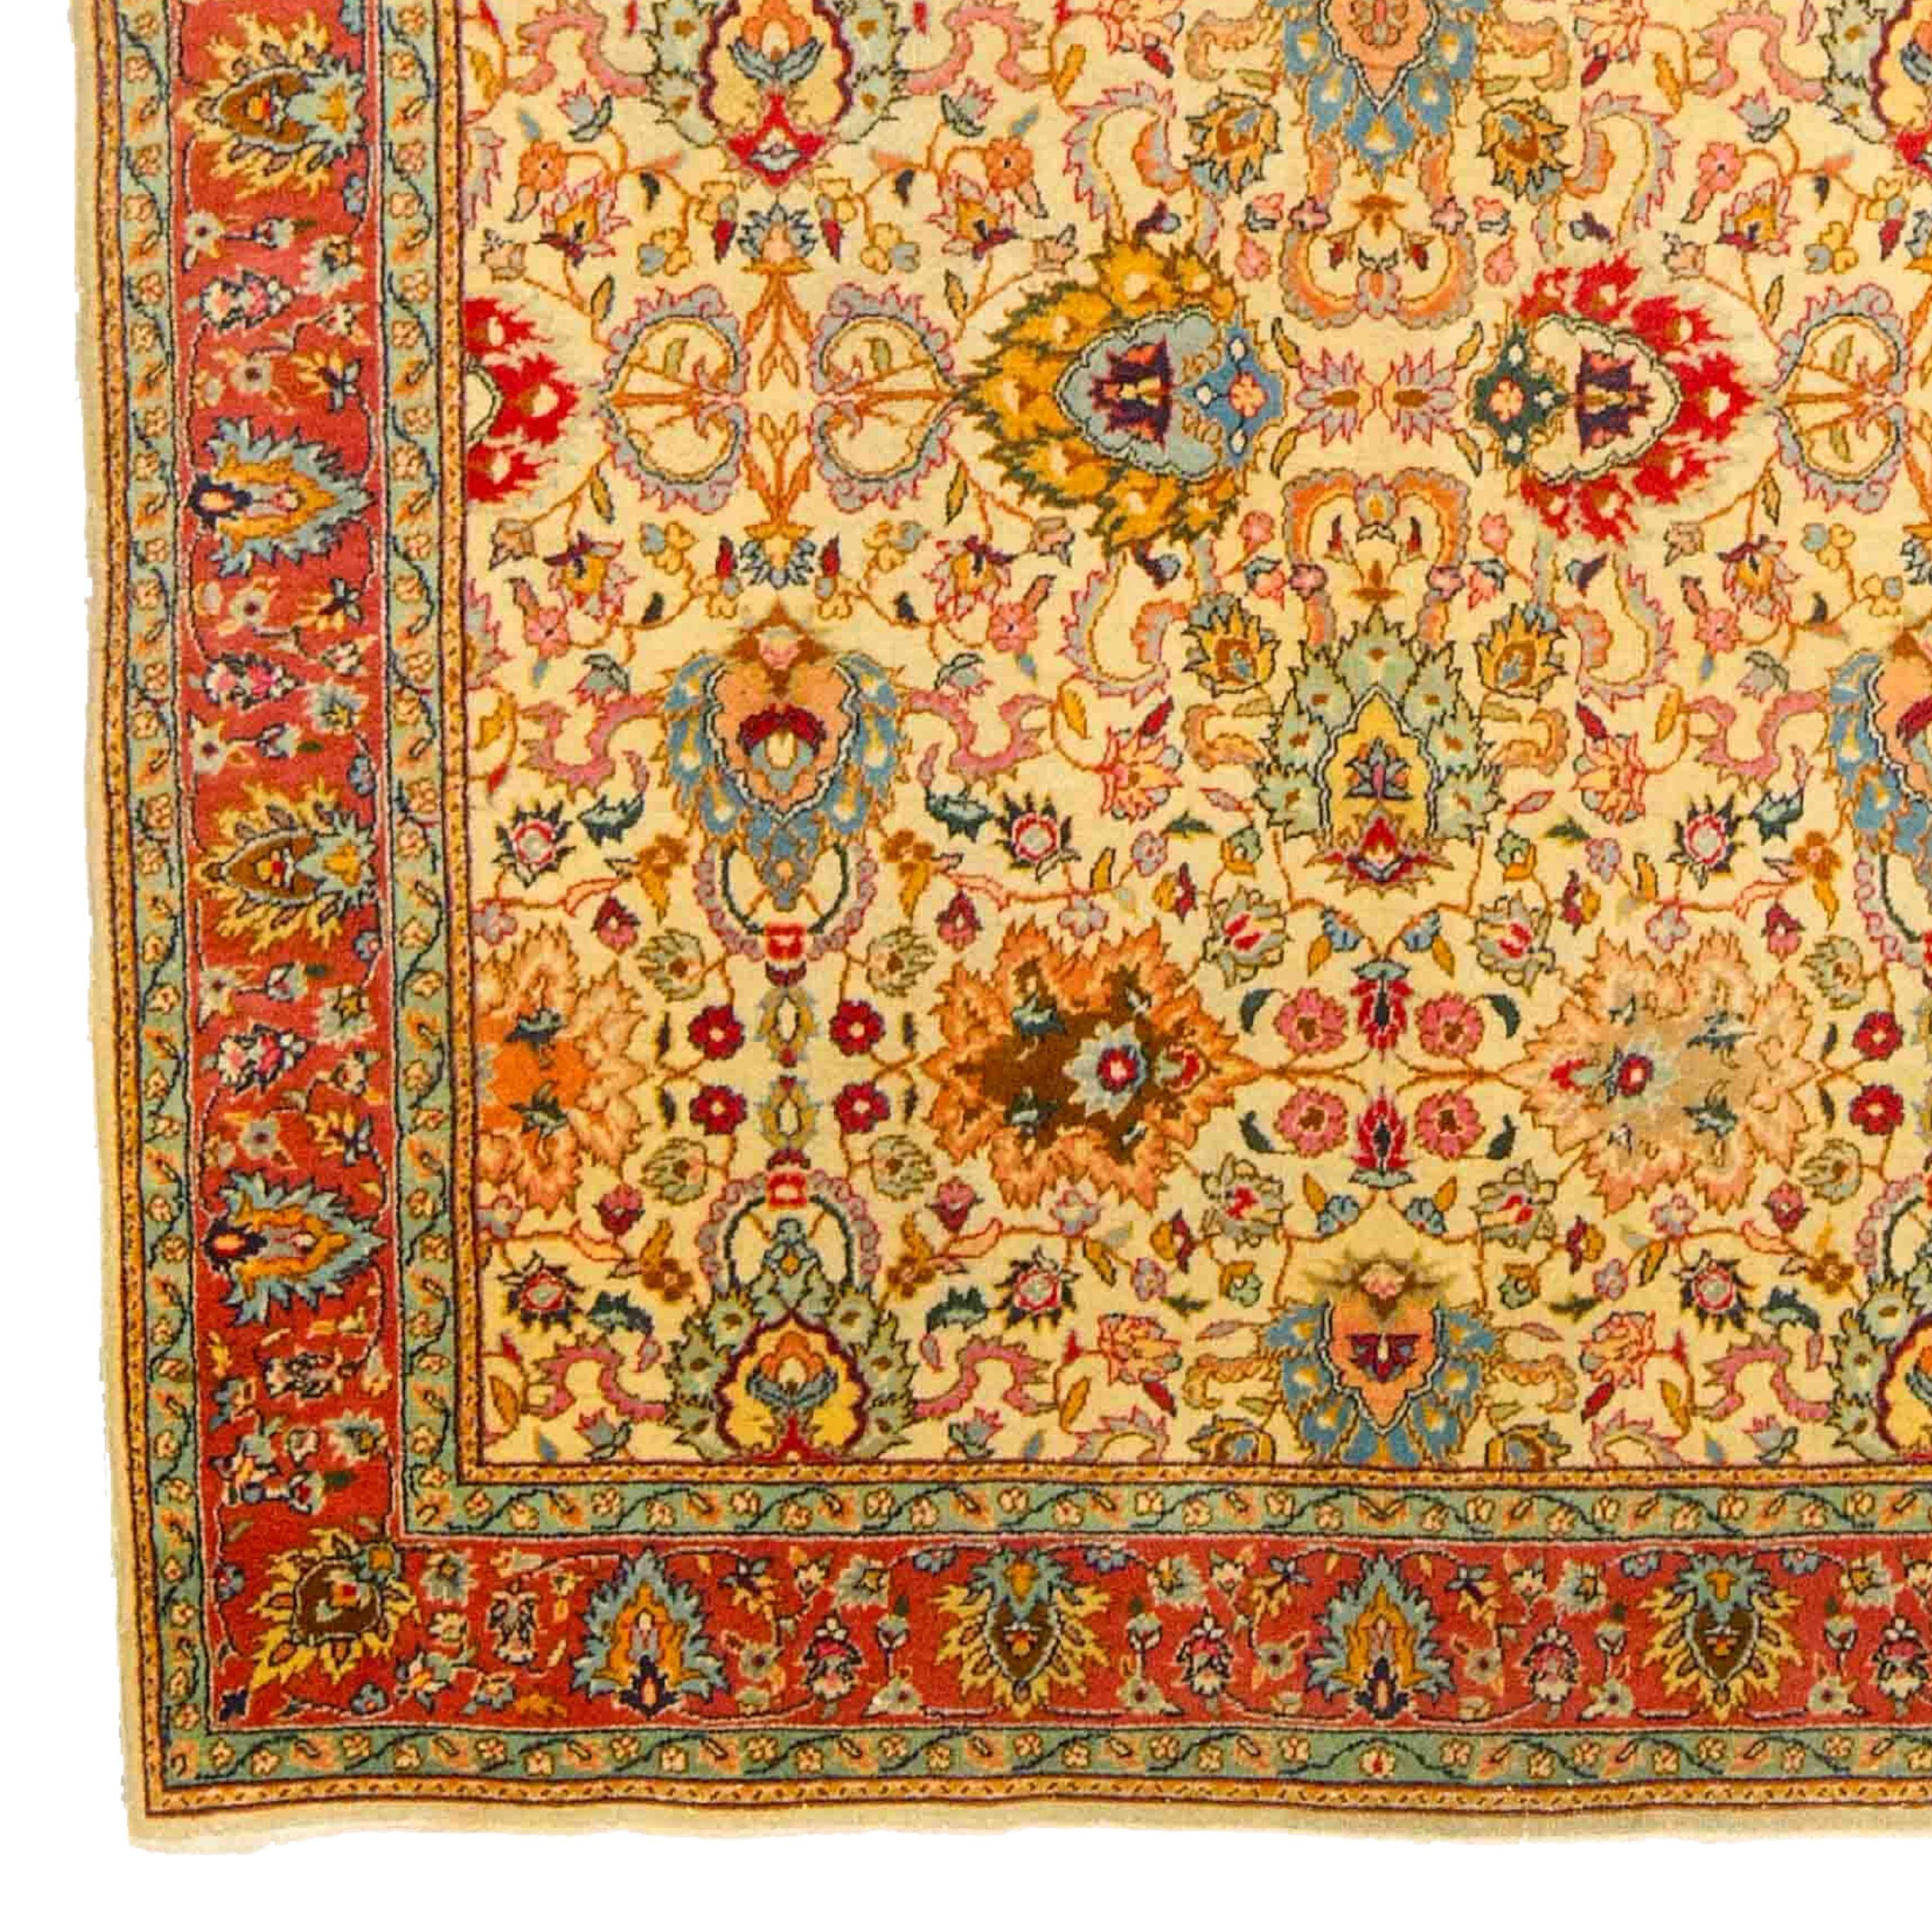 Tapis ancien de Tabriz 150x250 cm (4,92 x 8,20 ft) Fin du 19ème siècle Tapis de Tabriz Azerbaïdjan

À partir du milieu du XIXe siècle, la production commerciale de tapis a repris en Azerbaïdjan, et Tabriz est devenu l'un des centres les plus